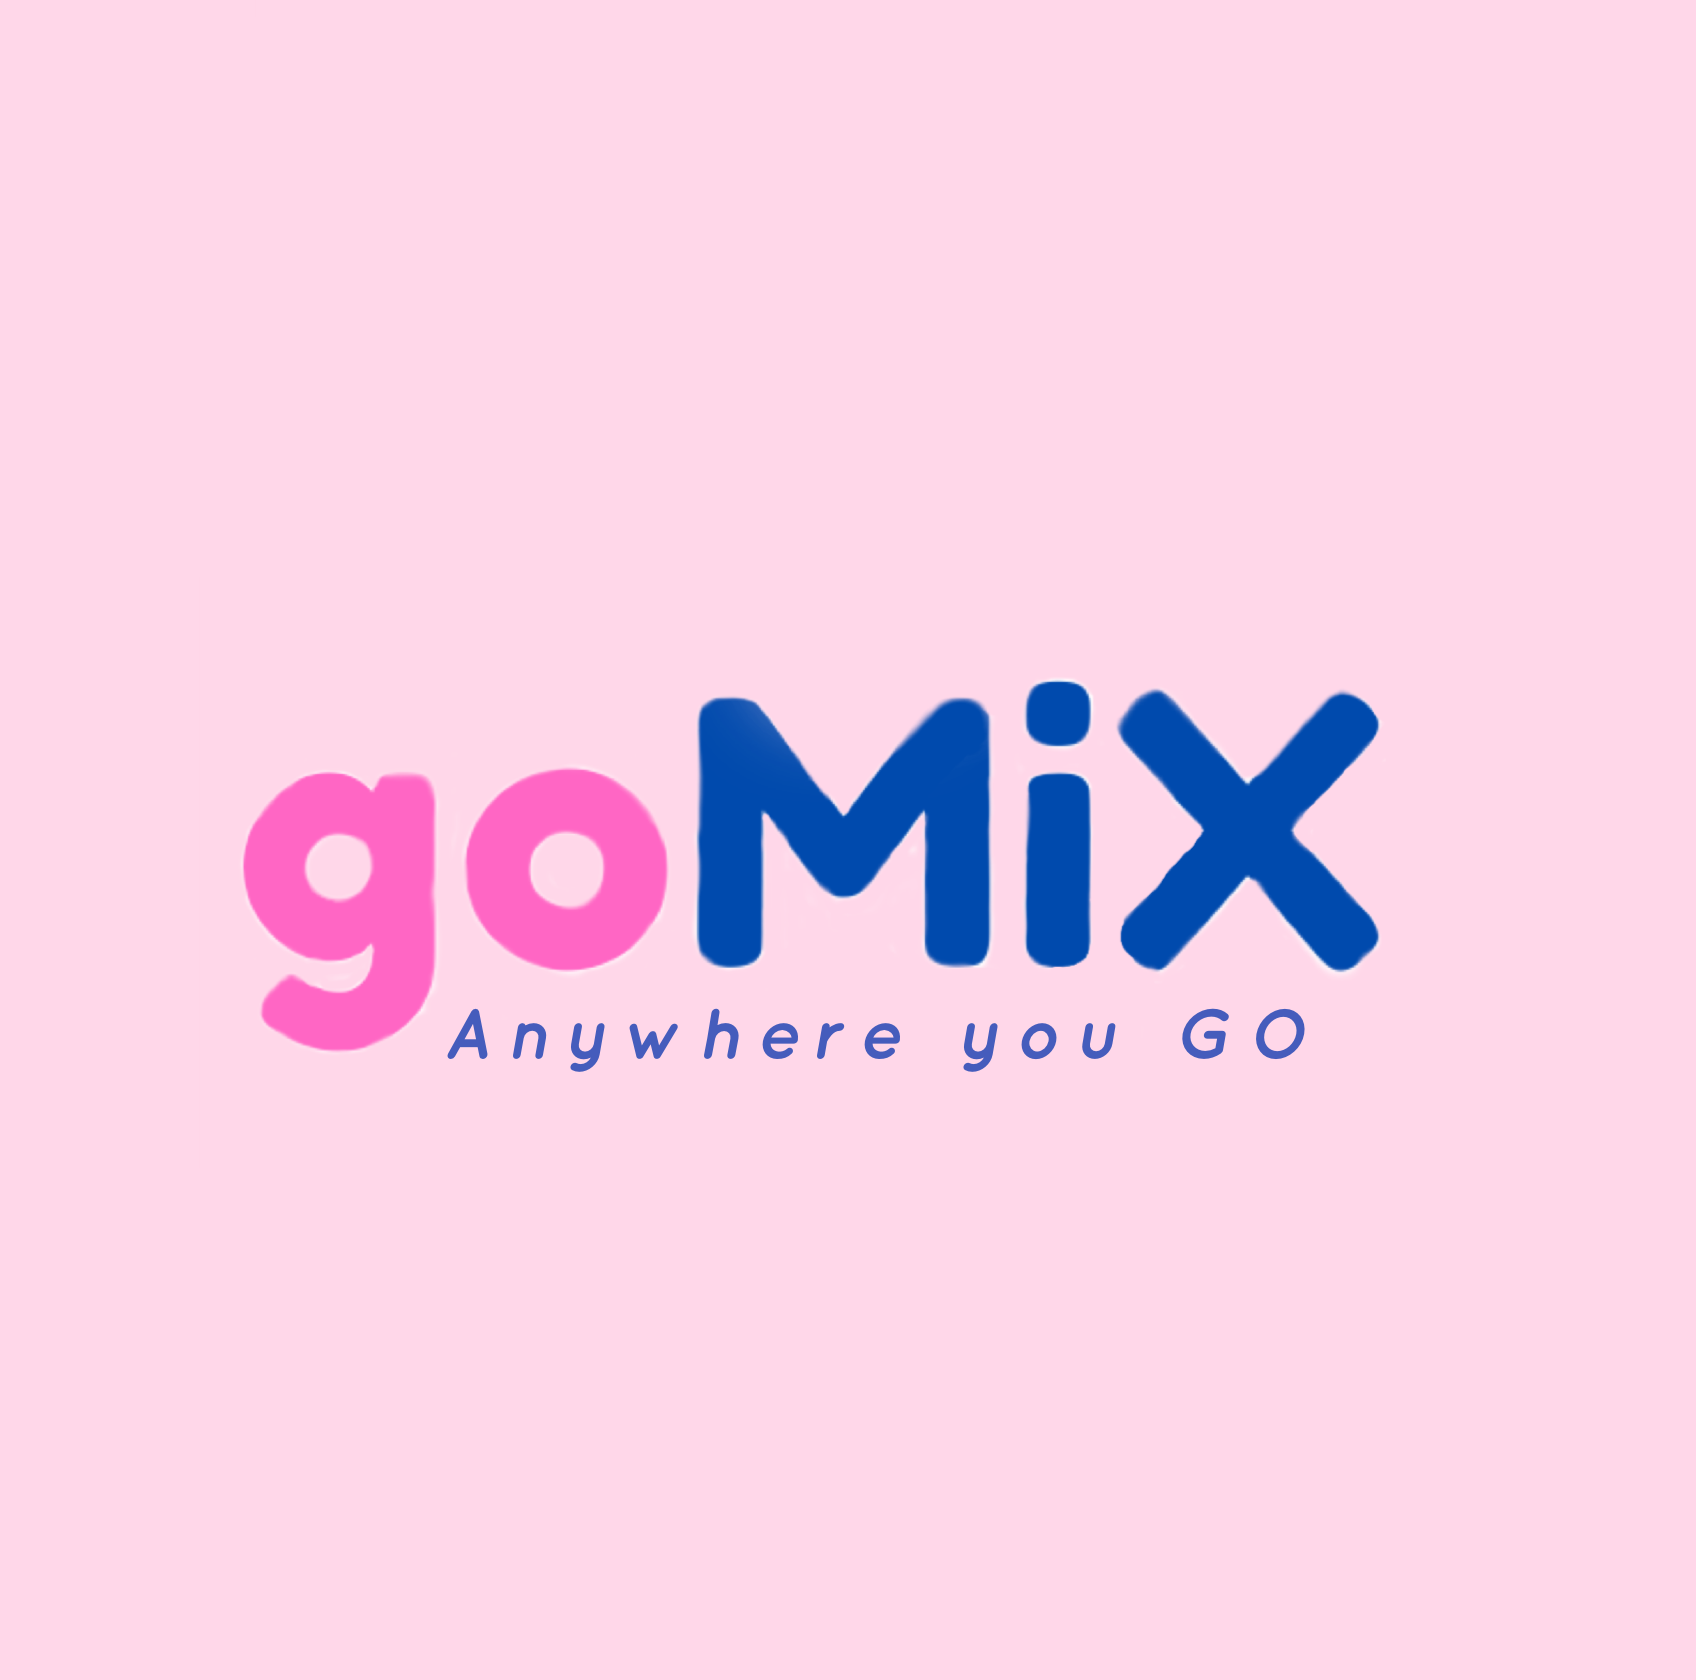 Go mix